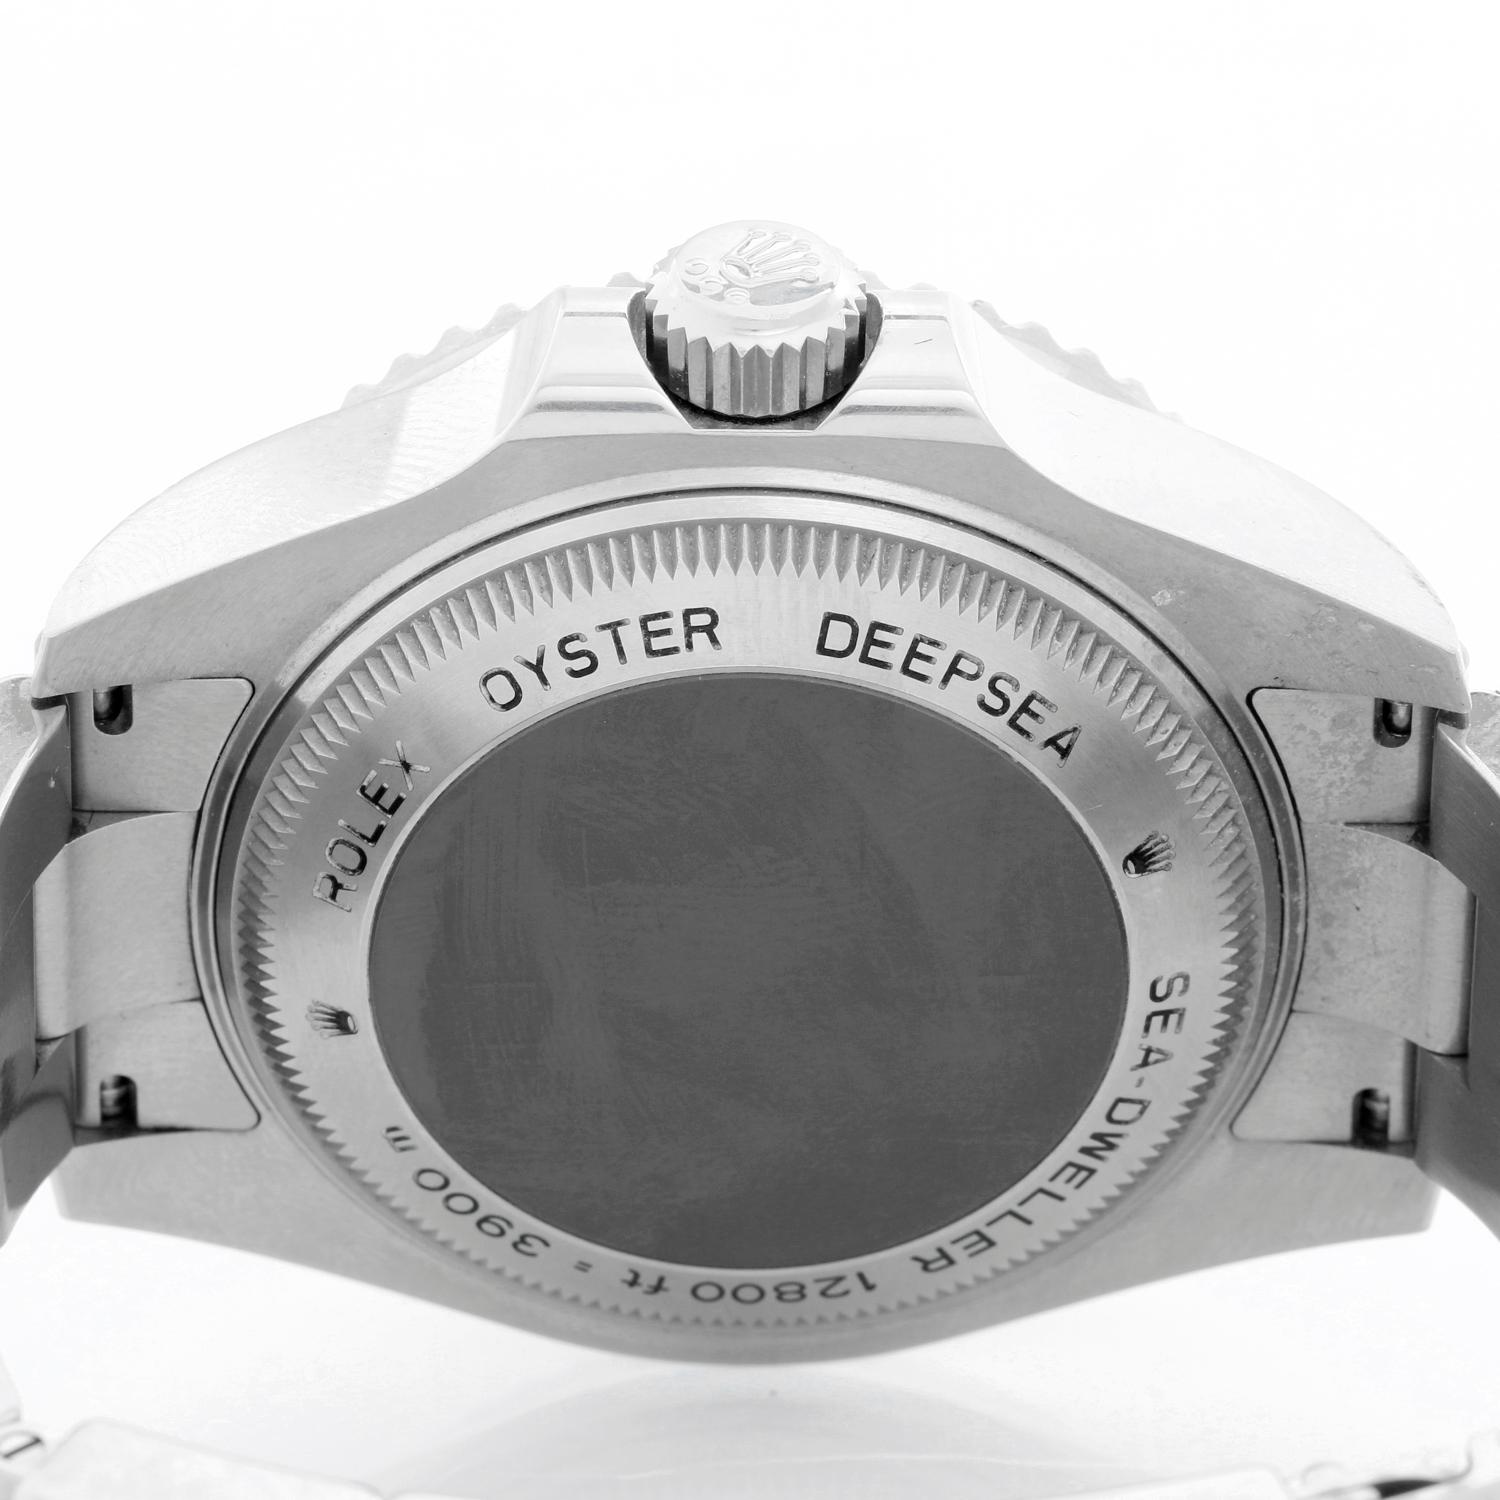 Rolex Men's Sea Dweller Deepsea ‘Deep Sea’ Men's Watch 116660 1